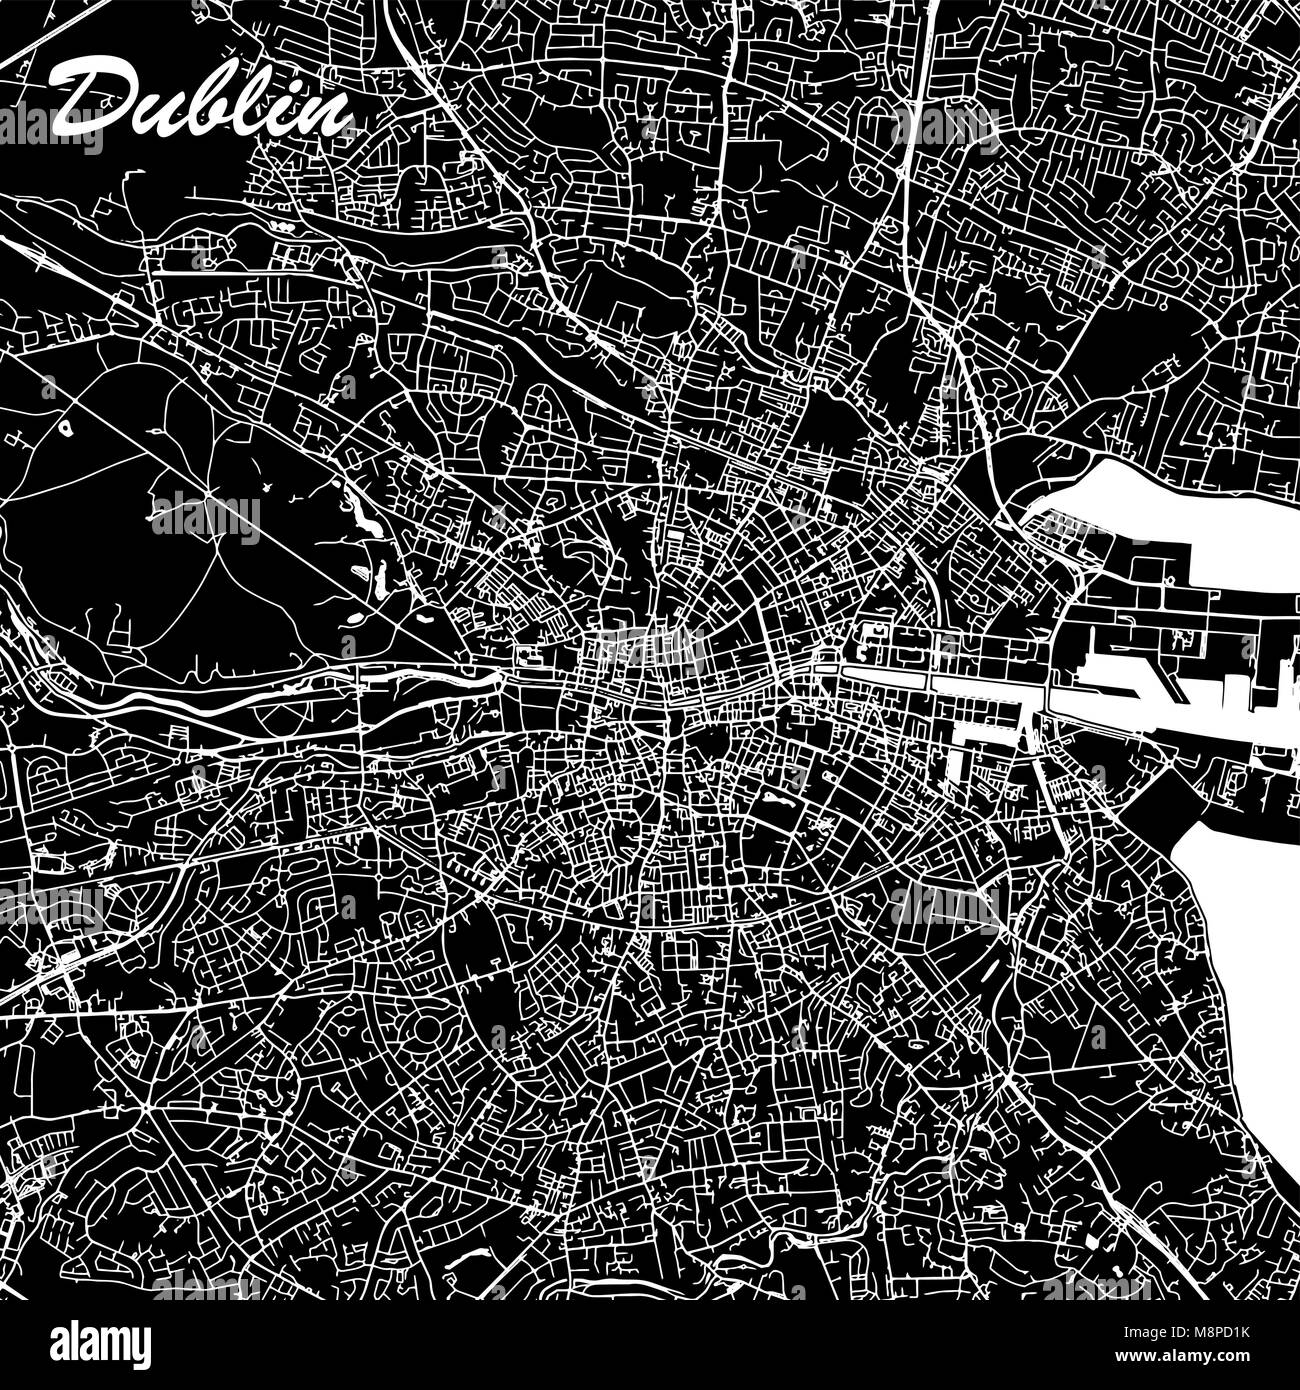 Dublin Irland Stadtplan Schwarz und Weiß. Abstrakt Vektor Grafik mit Autobahnen, Straßen und kleineren Straßen der Stadt. Metropolregion Stock Vektor